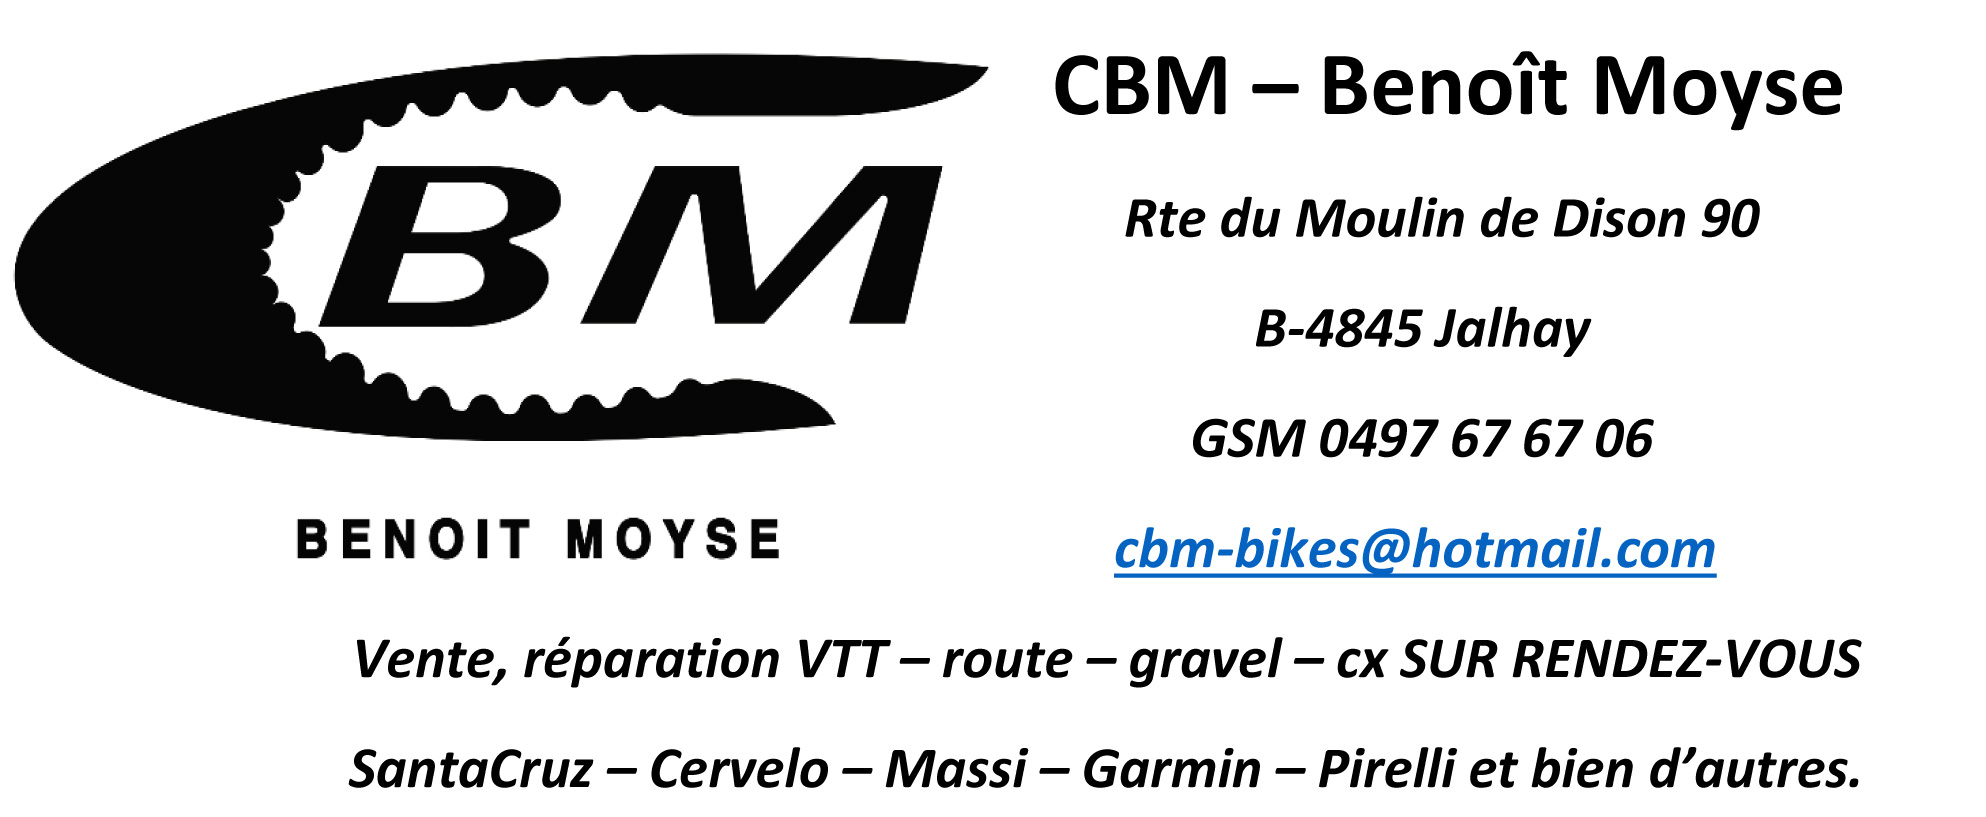 CBM - Benoit Moyse